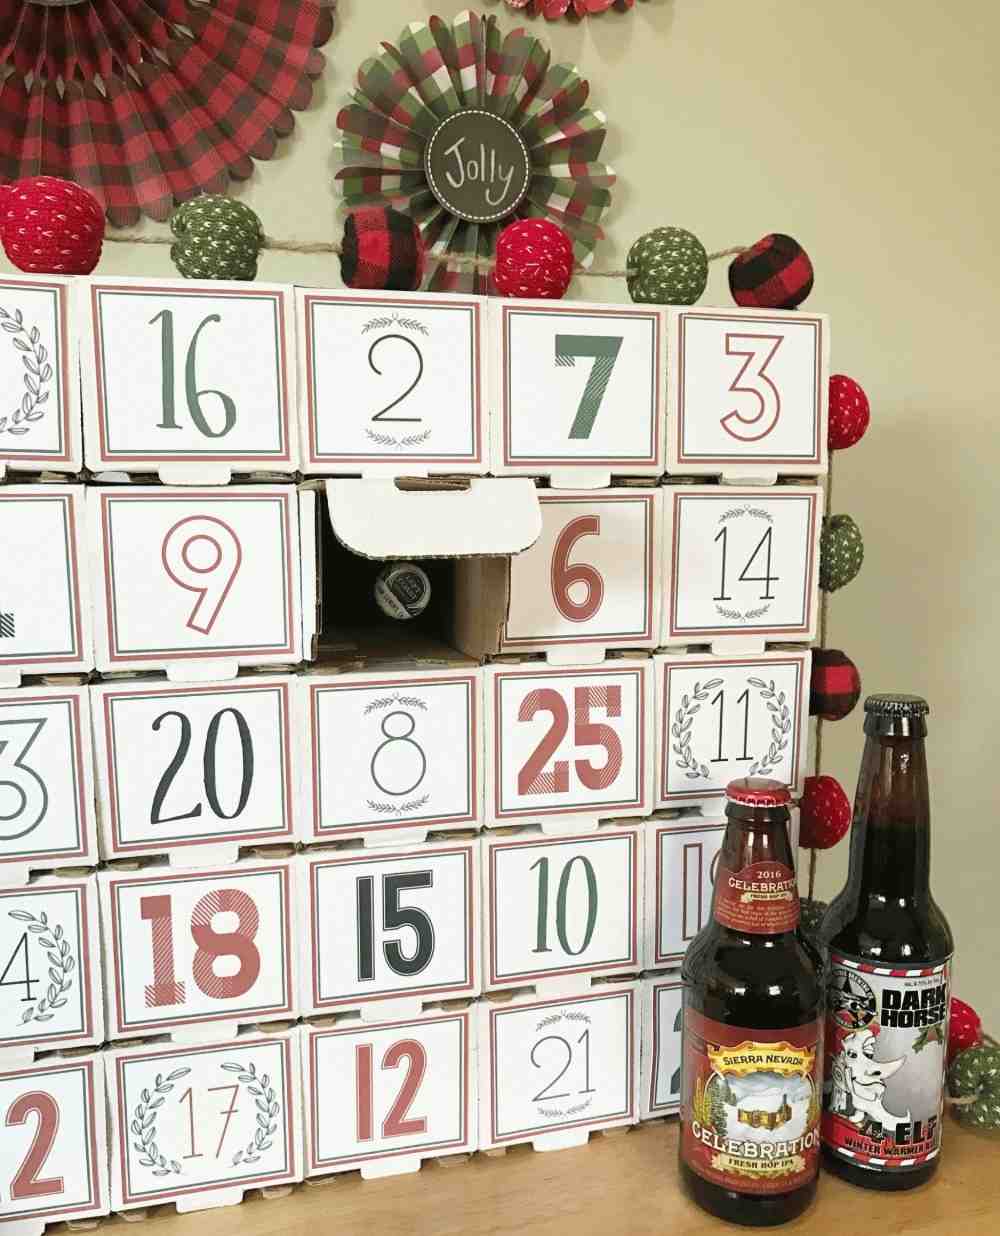 kreativa diy hantverksidéer för öl adventskalender hemlagad av kartong och ölflaskor till jul